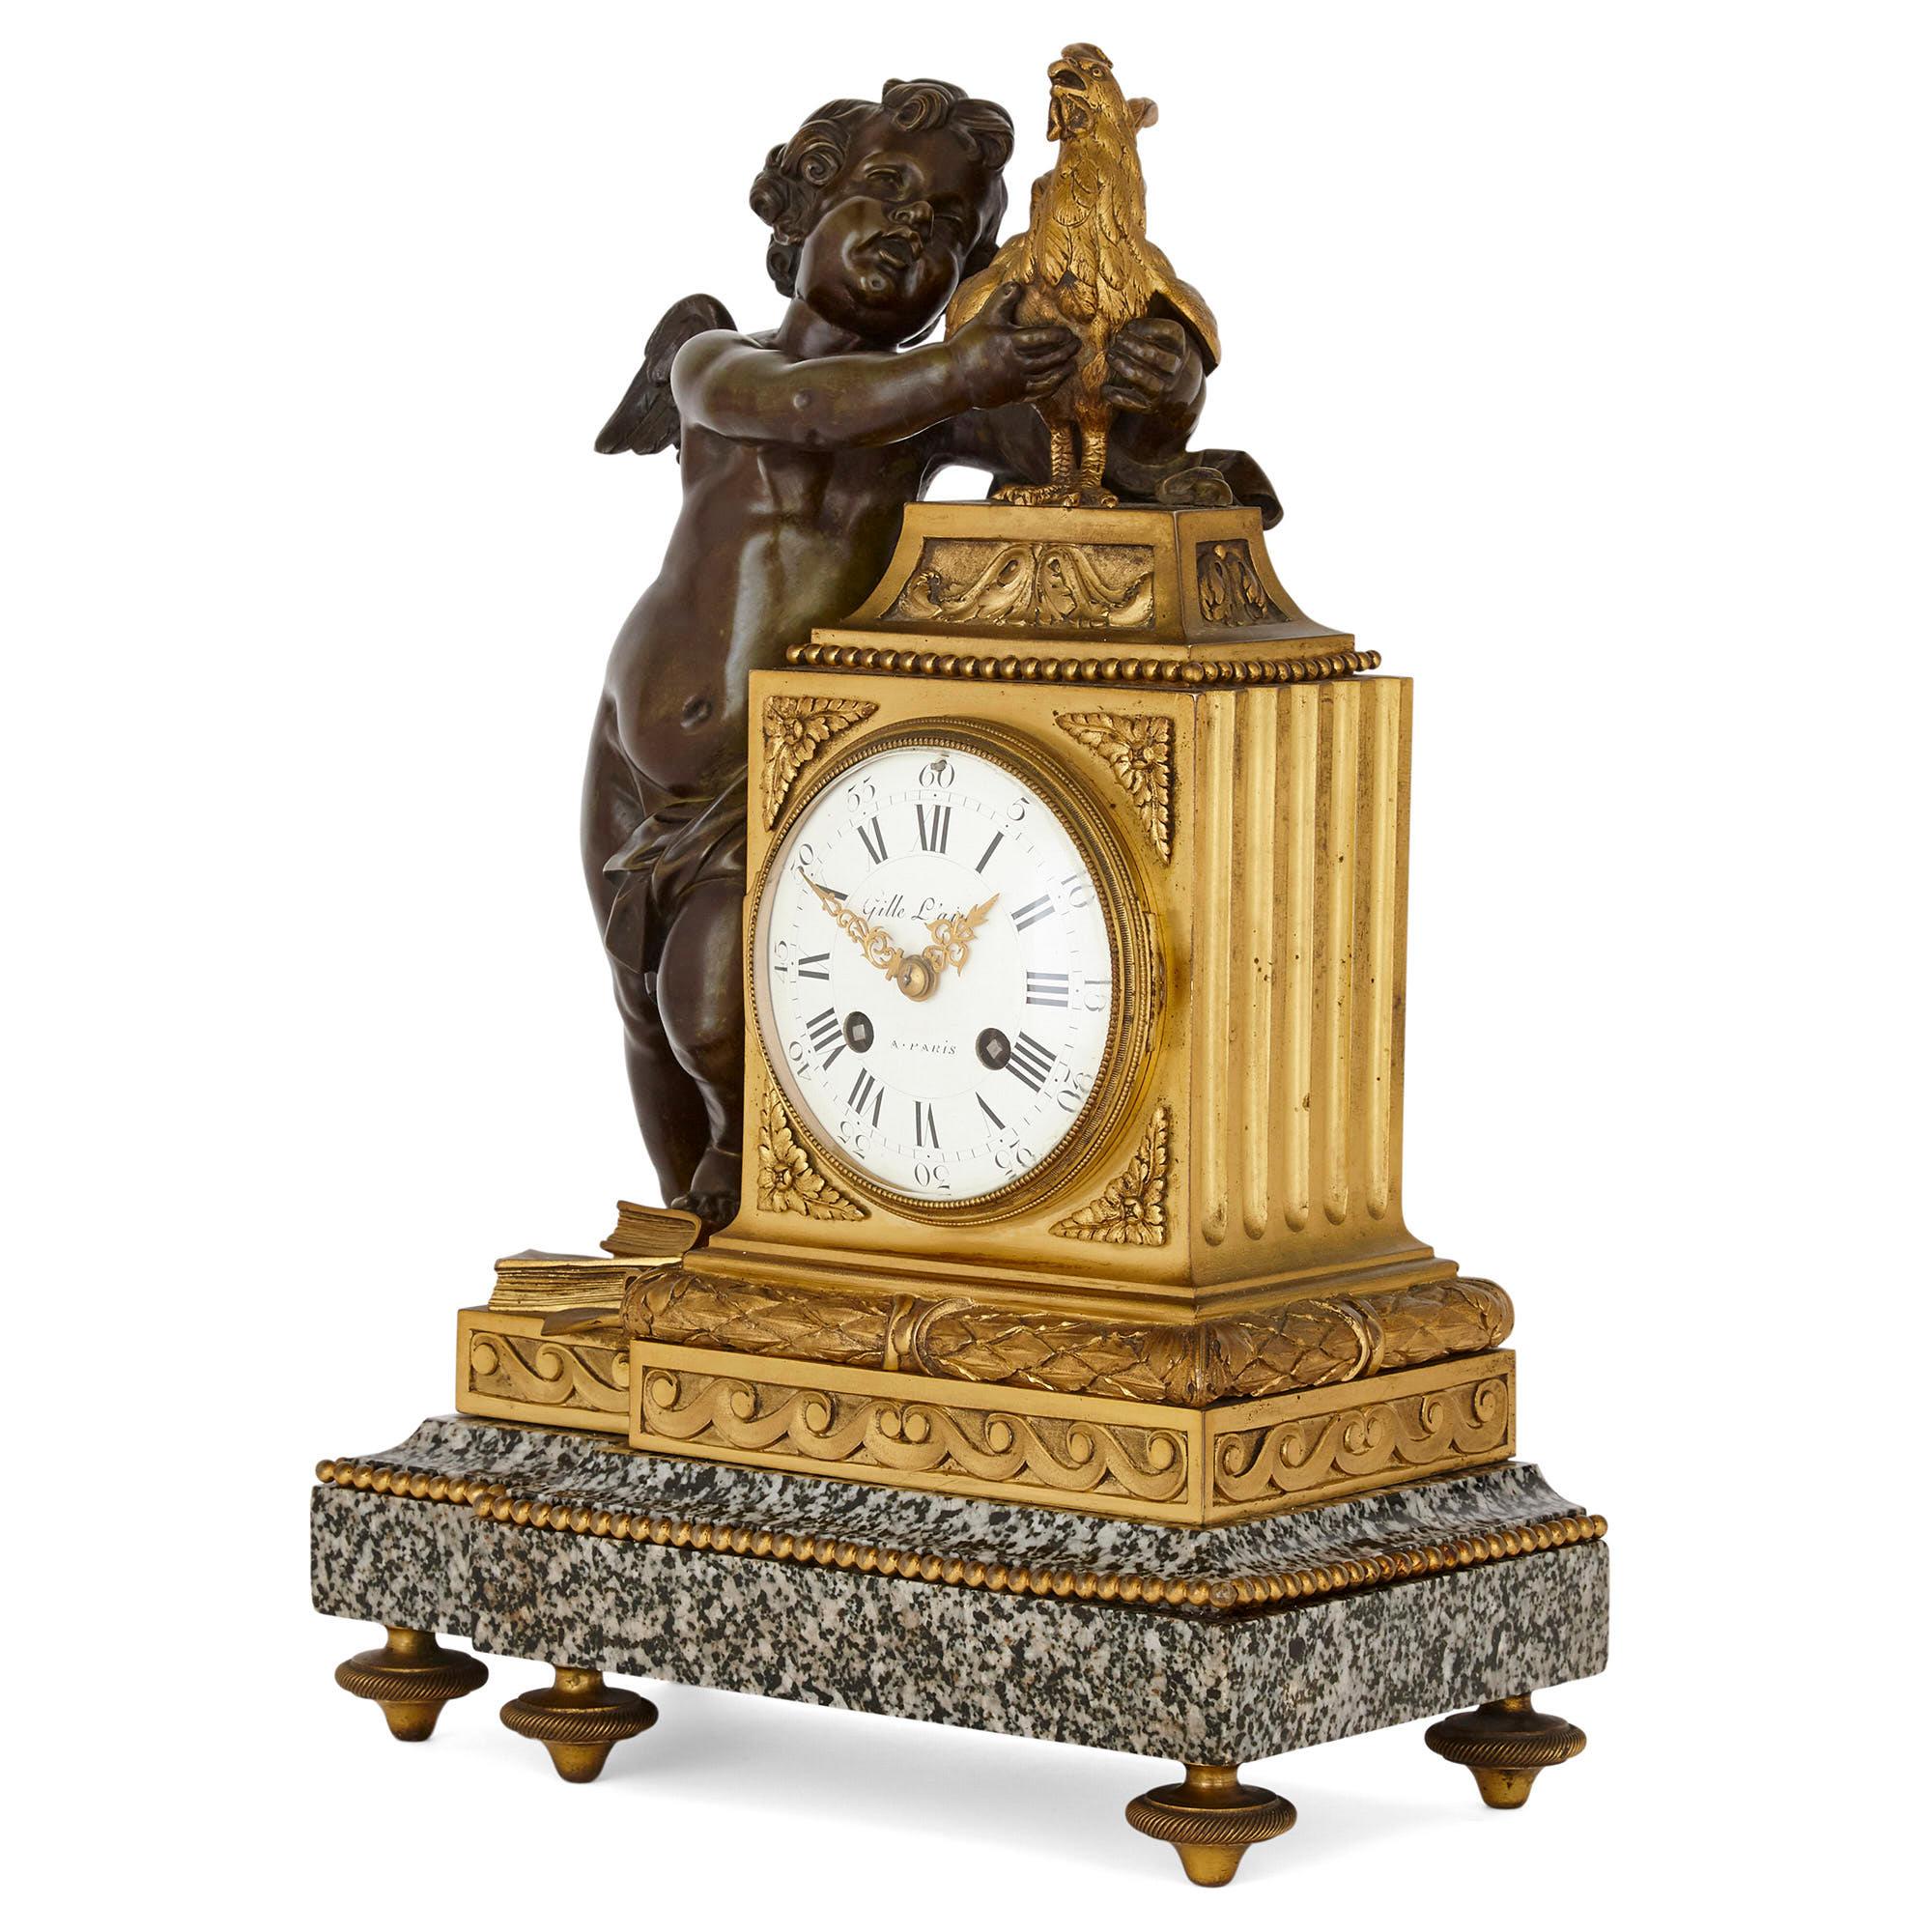 Cette horloge de cheminée française de style néoclassique est fabriquée en bronze patiné et doré ainsi qu'en marbre noir et gris moucheté. Le corps de l'horloge est formé d'un tambour en bronze doré monté de travers, de forme rectangulaire. Le